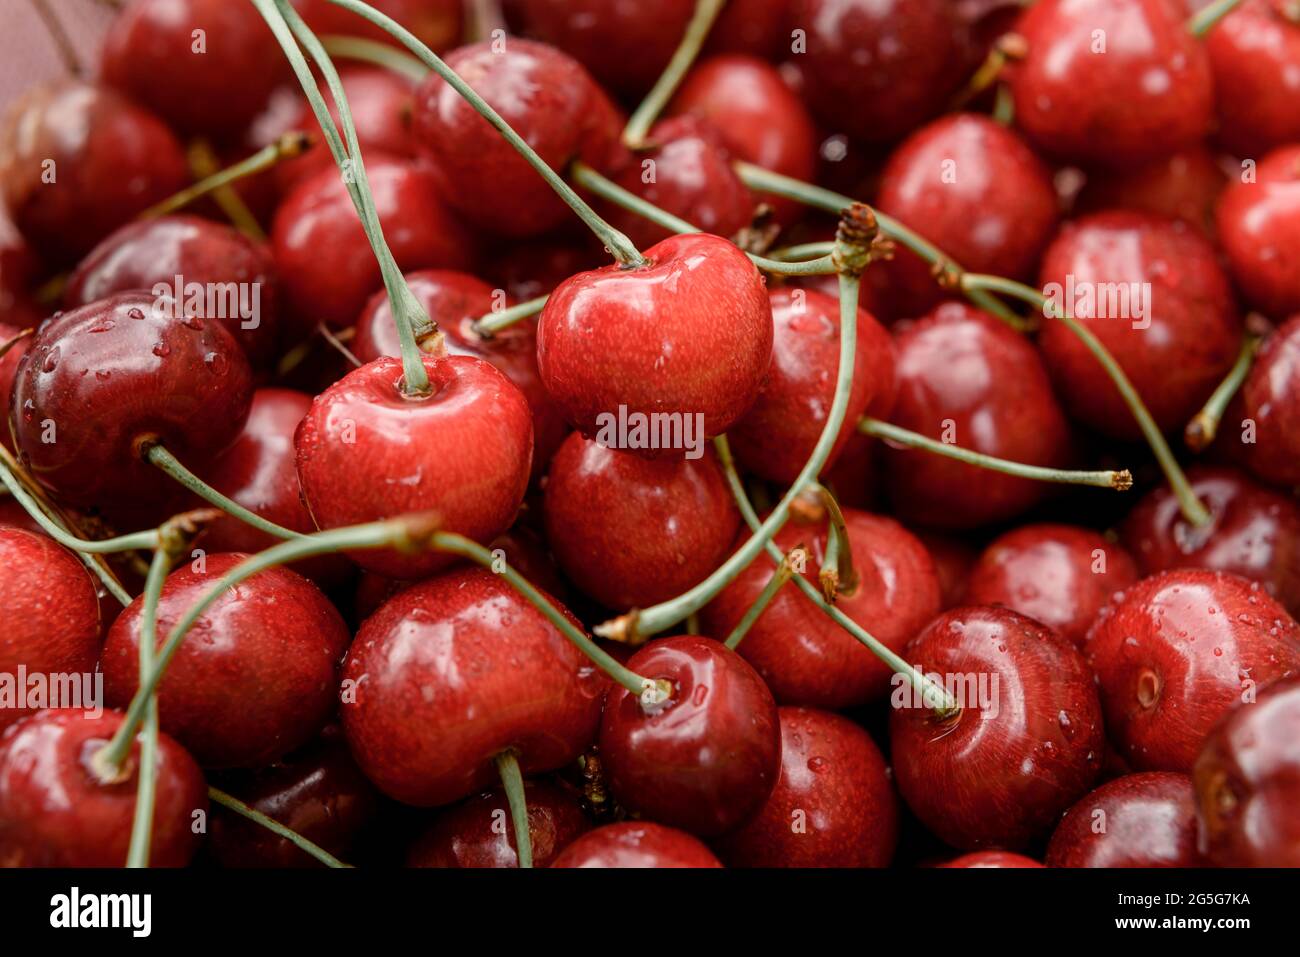 Cereza dulce madura de primer plano, frutas de verano con alto contenido de vitaminas y antioxidantes Foto de stock